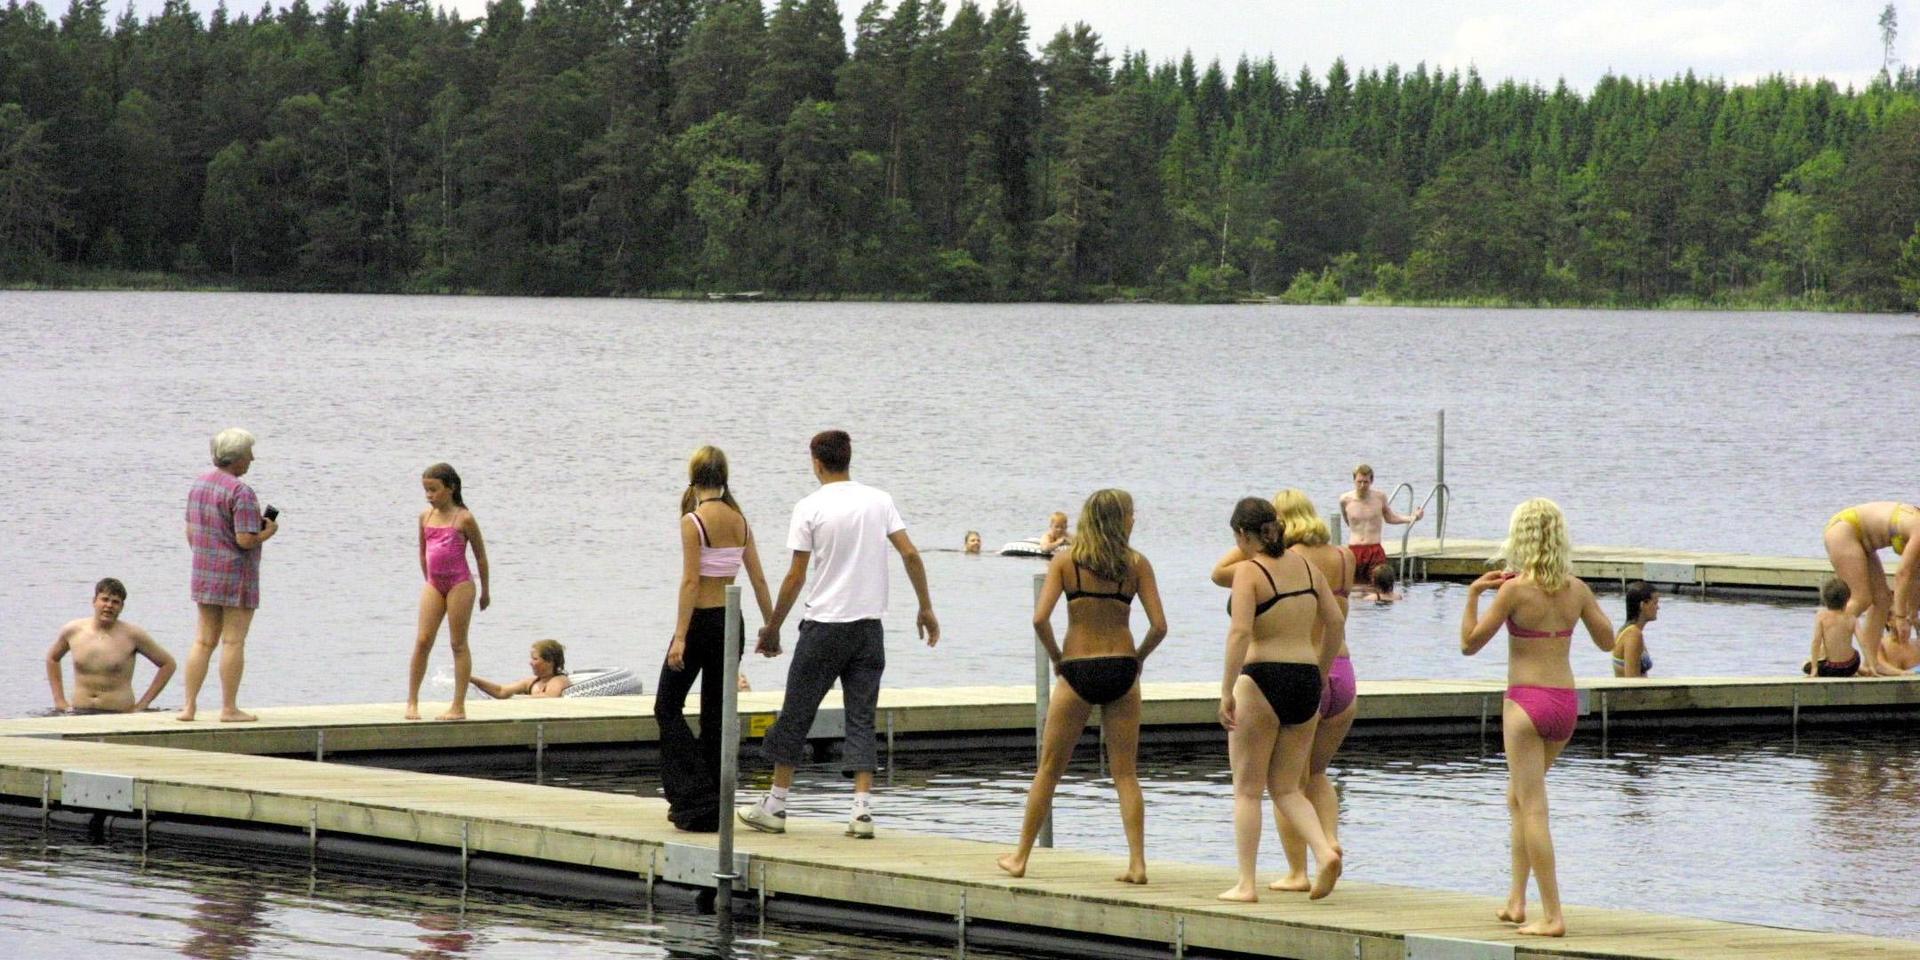 Skärshults badplats är en av kommunens populäraste. Men det skulle kunna göras bättre för exempelvis badsugna som är beroende av rullstol.